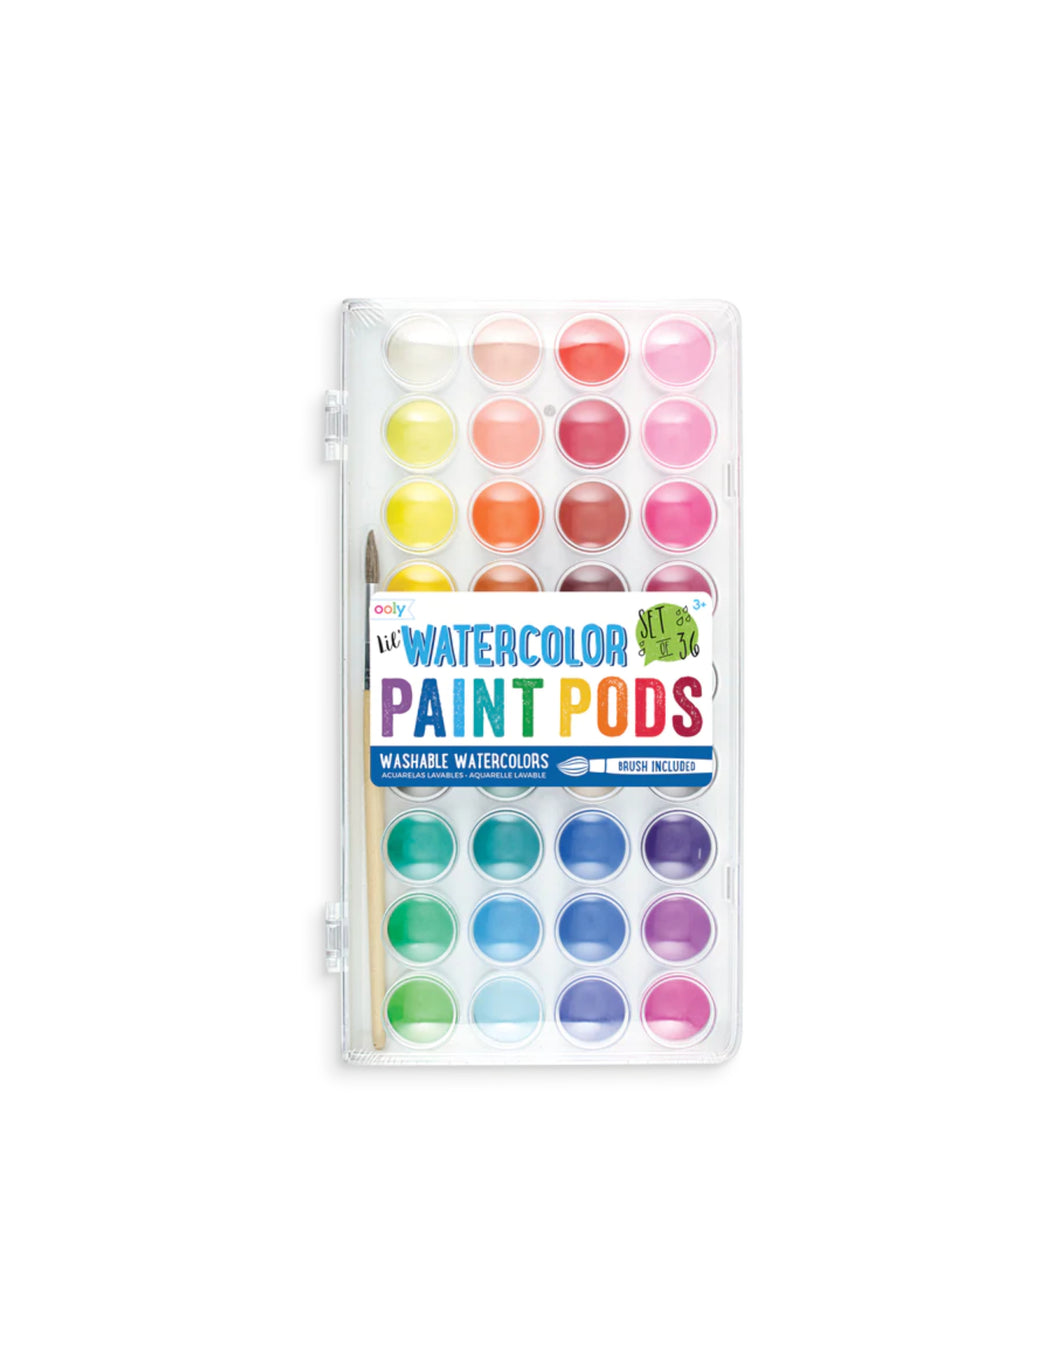 Lil' Paint Pods Watercolor Paint - Set of 36